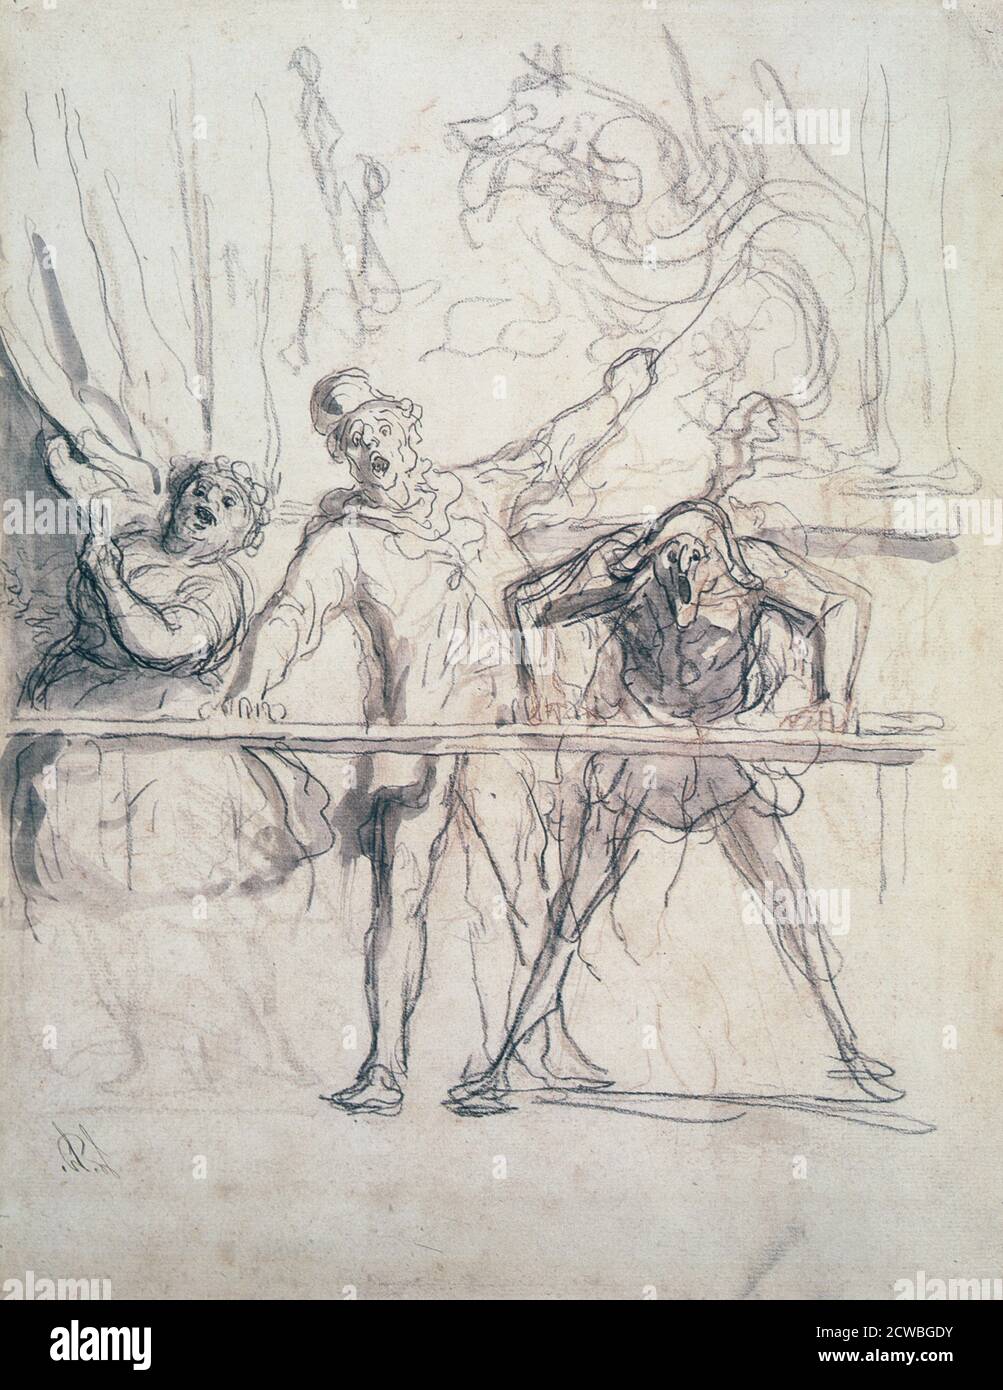 Etude' par giovanni battista tiepolo, XVIIIe siècle. De la collection du Musée des Beaux-Arts, Budapest, Hongrie. Banque D'Images